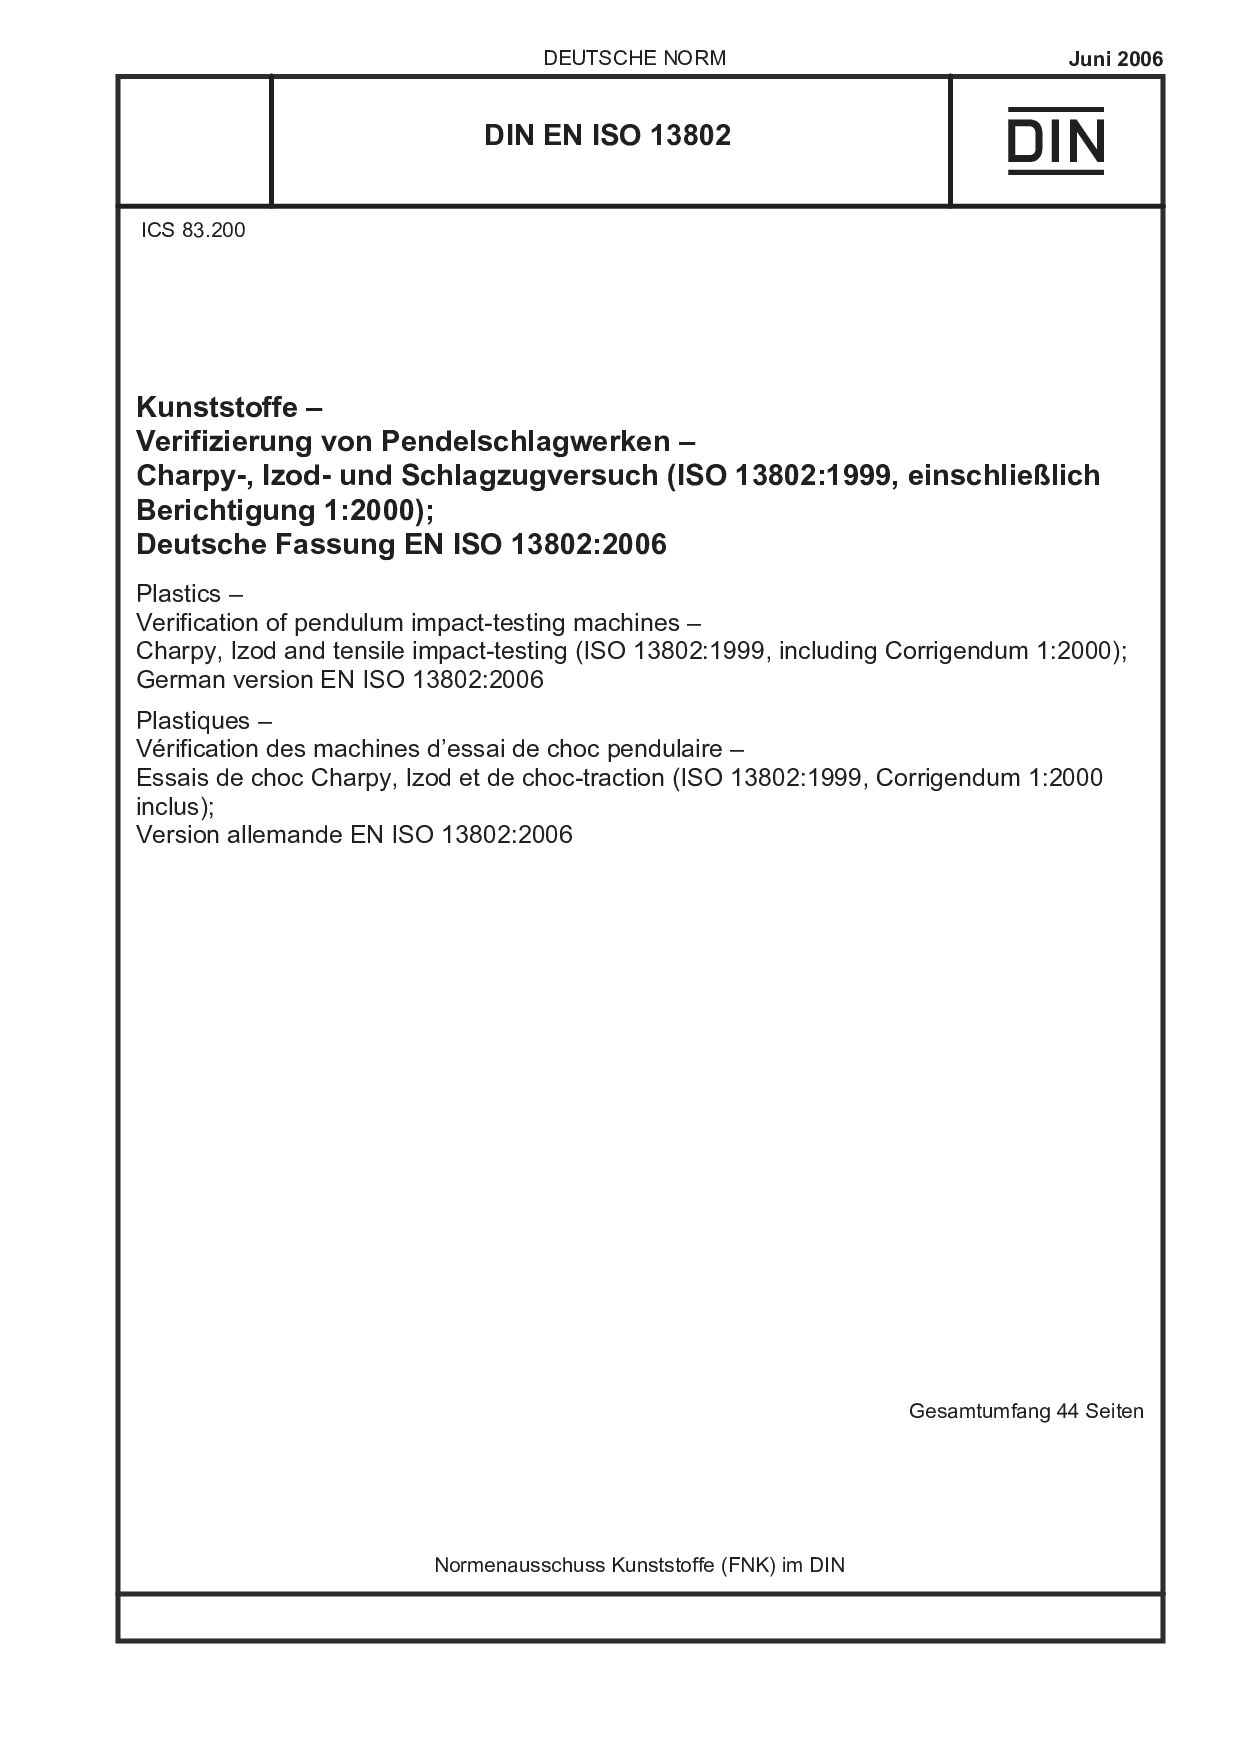 DIN EN ISO 13802:2006封面图